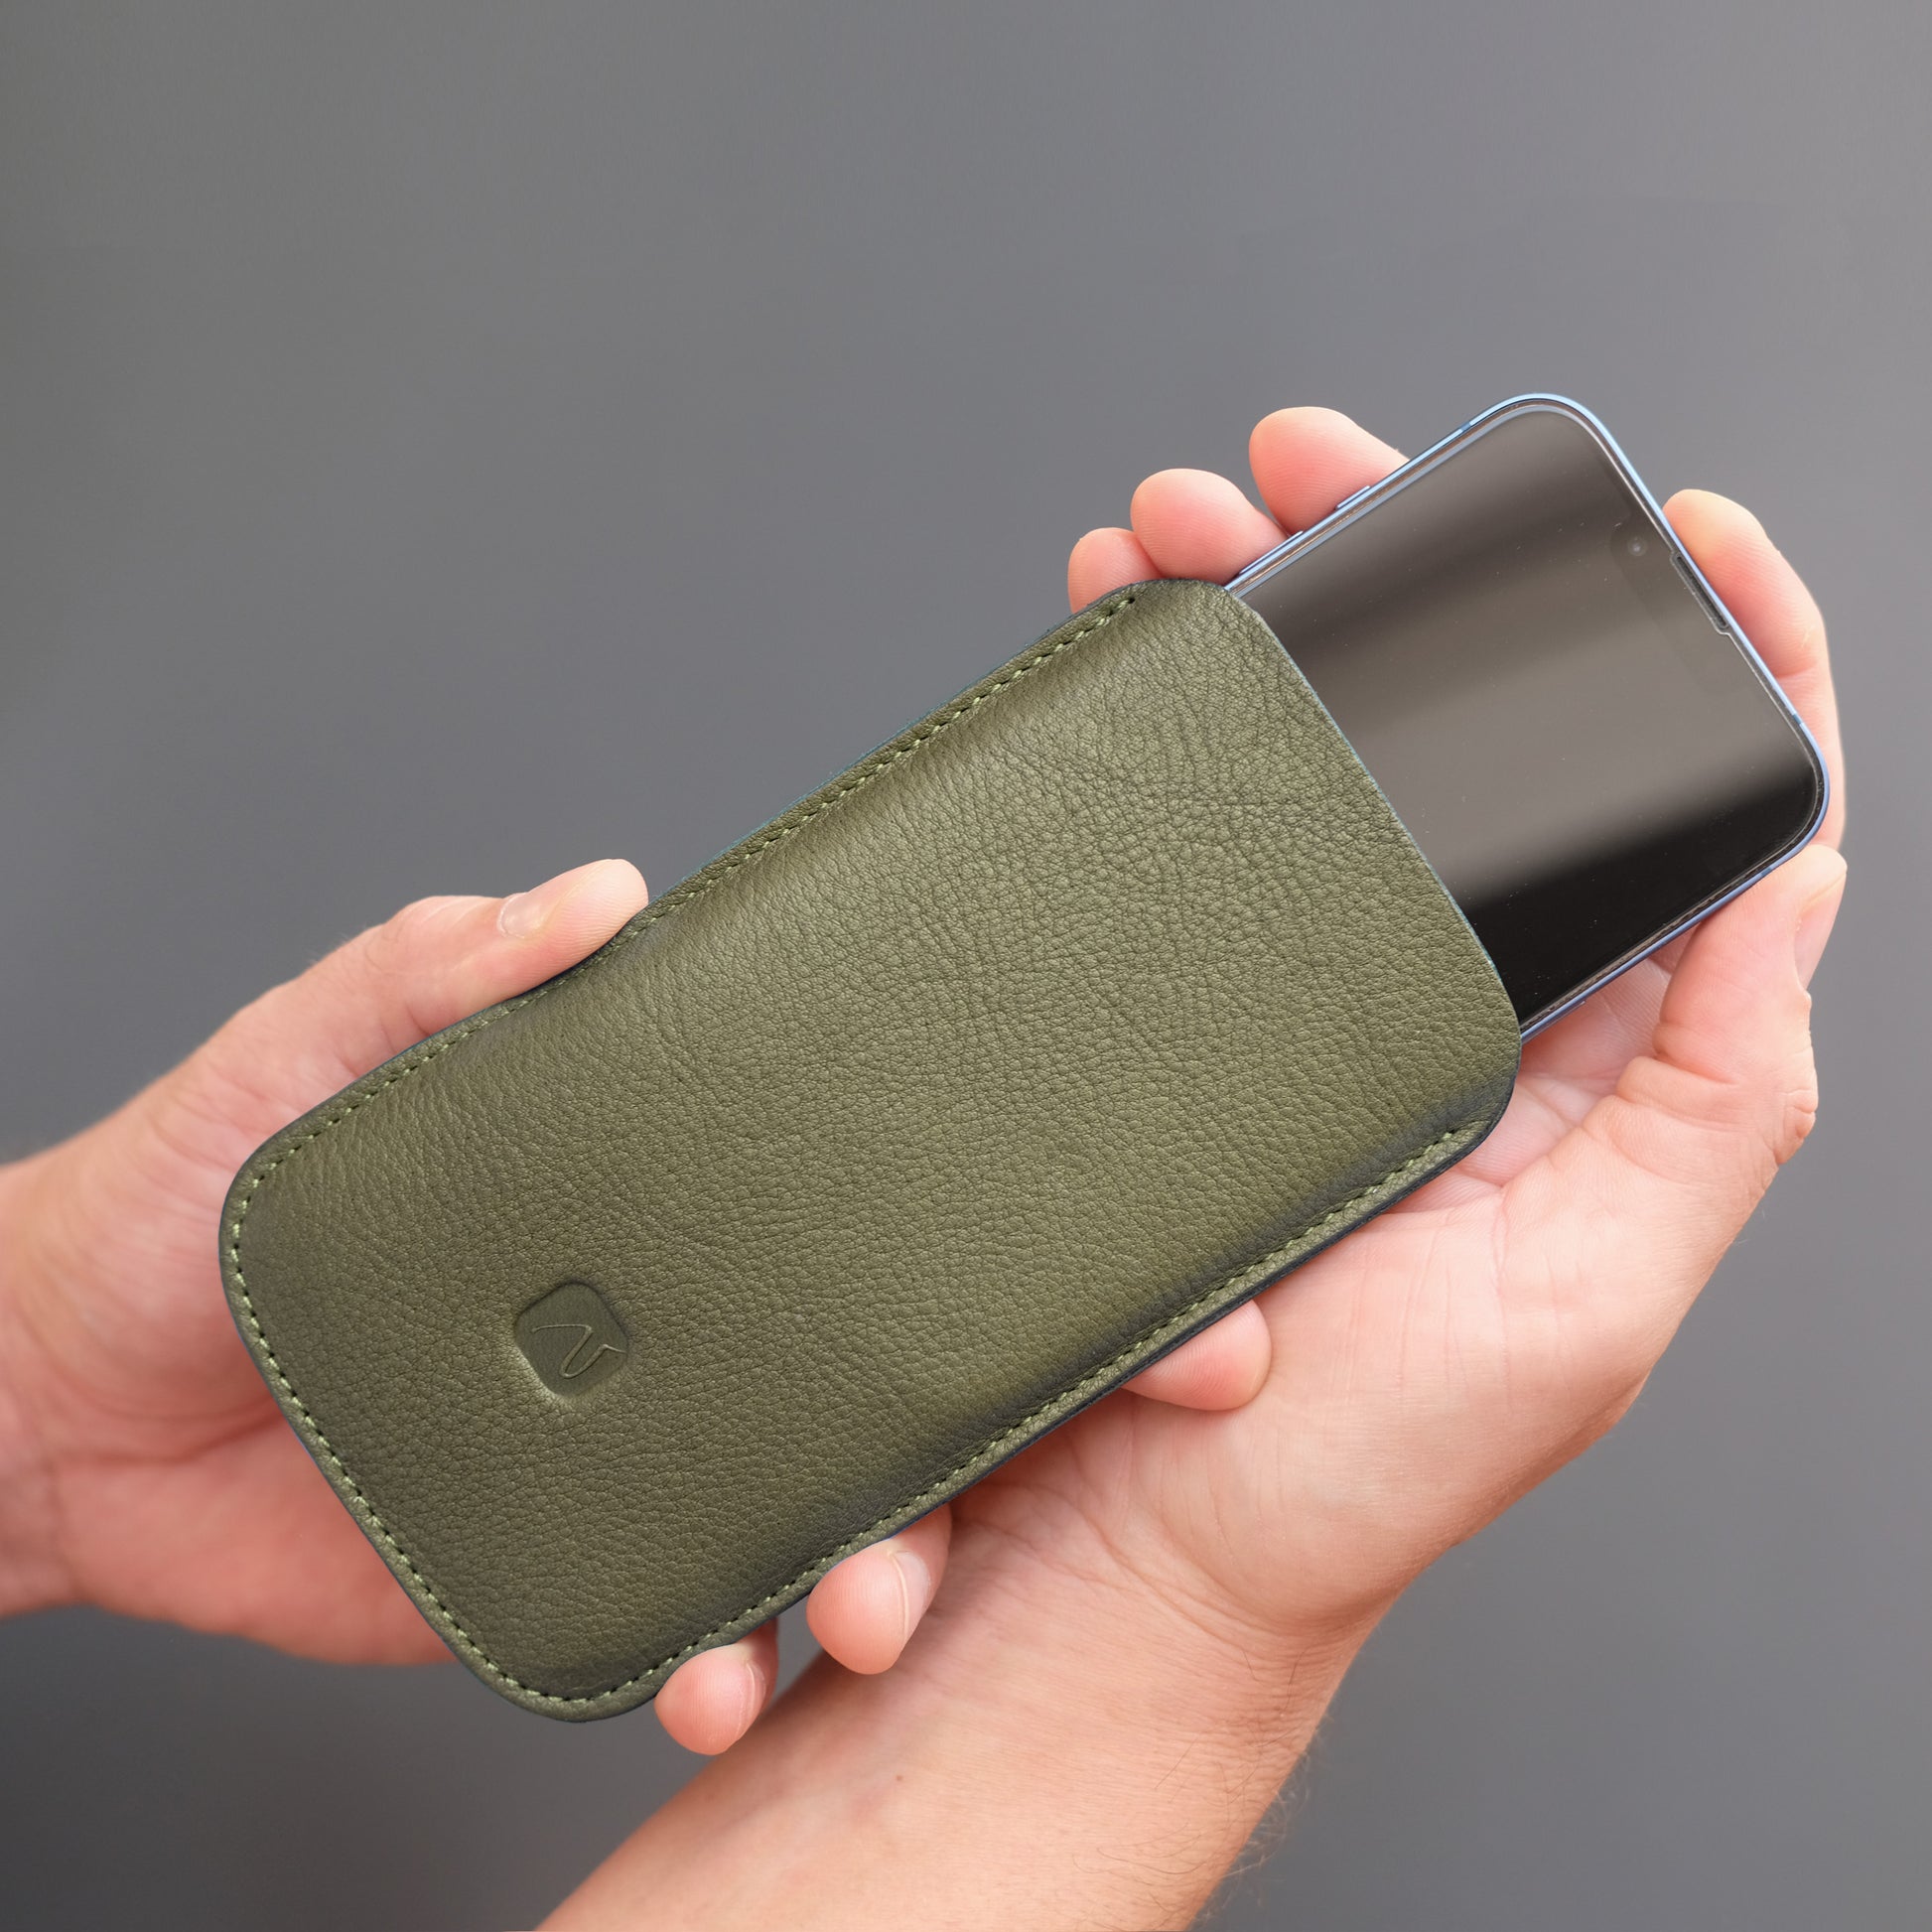 iPhone wird in olivgrünes Handy Sleeve gesteckt